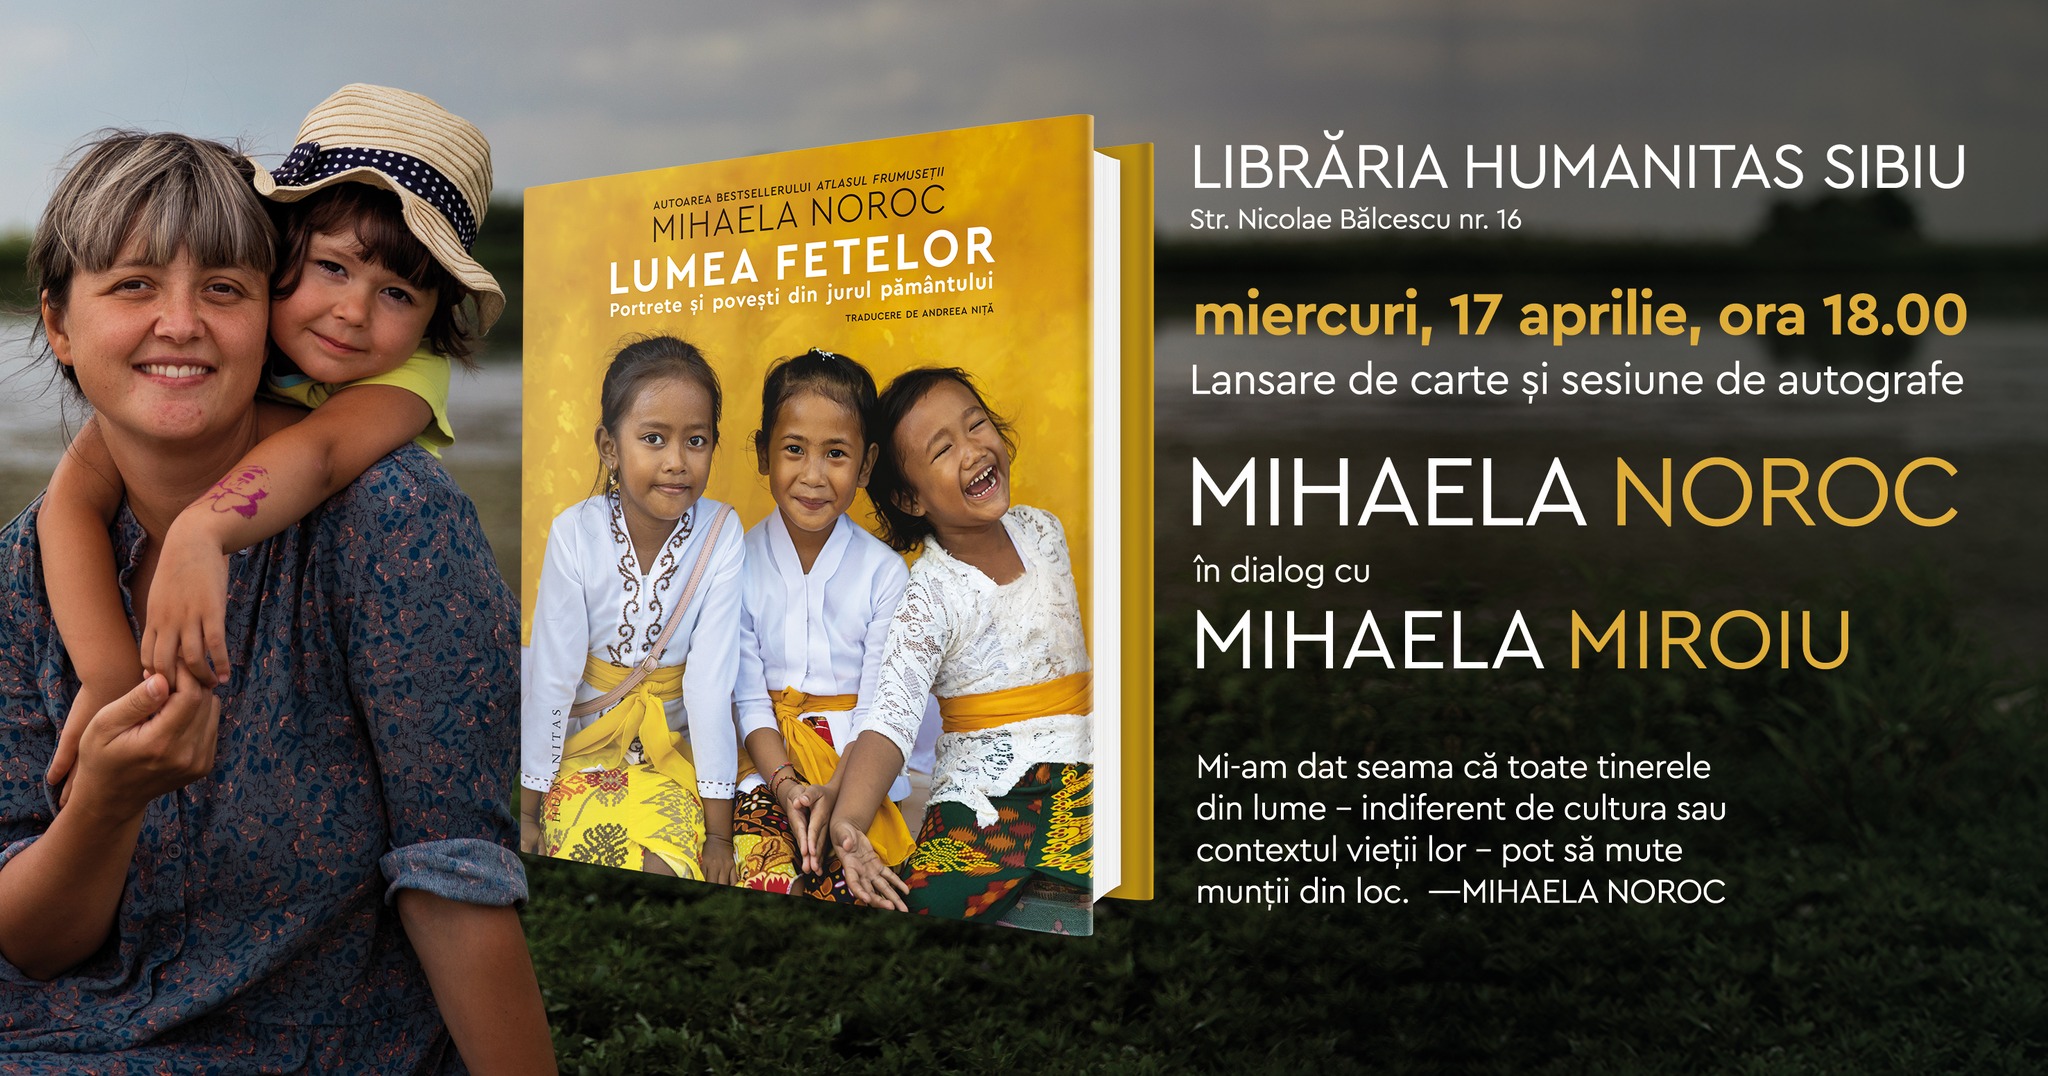 Mihaela Noroc în dialog cu Mihaela Miroiu despre "Lumea fetelor", bestseller Humanitas